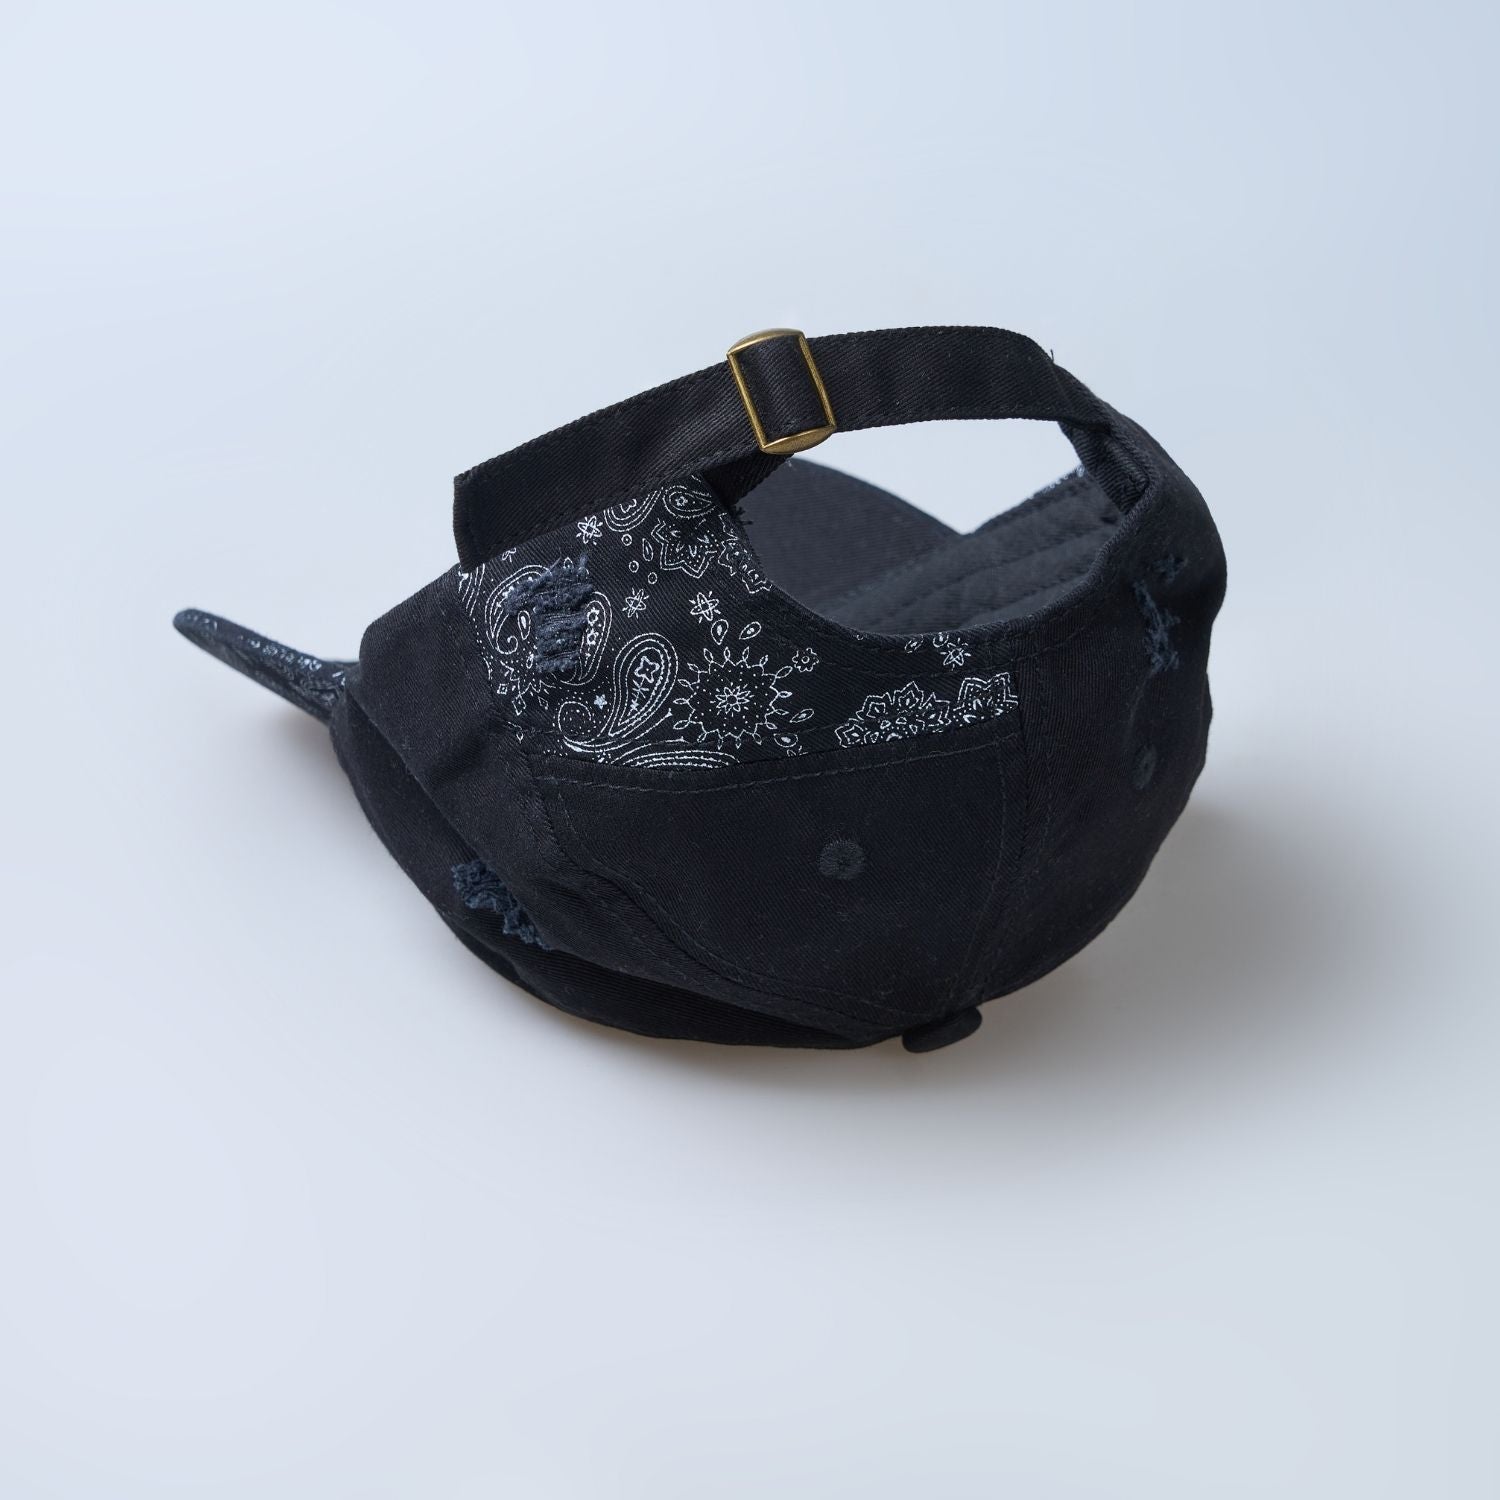 Black colored design patterned cap for men, upside down.